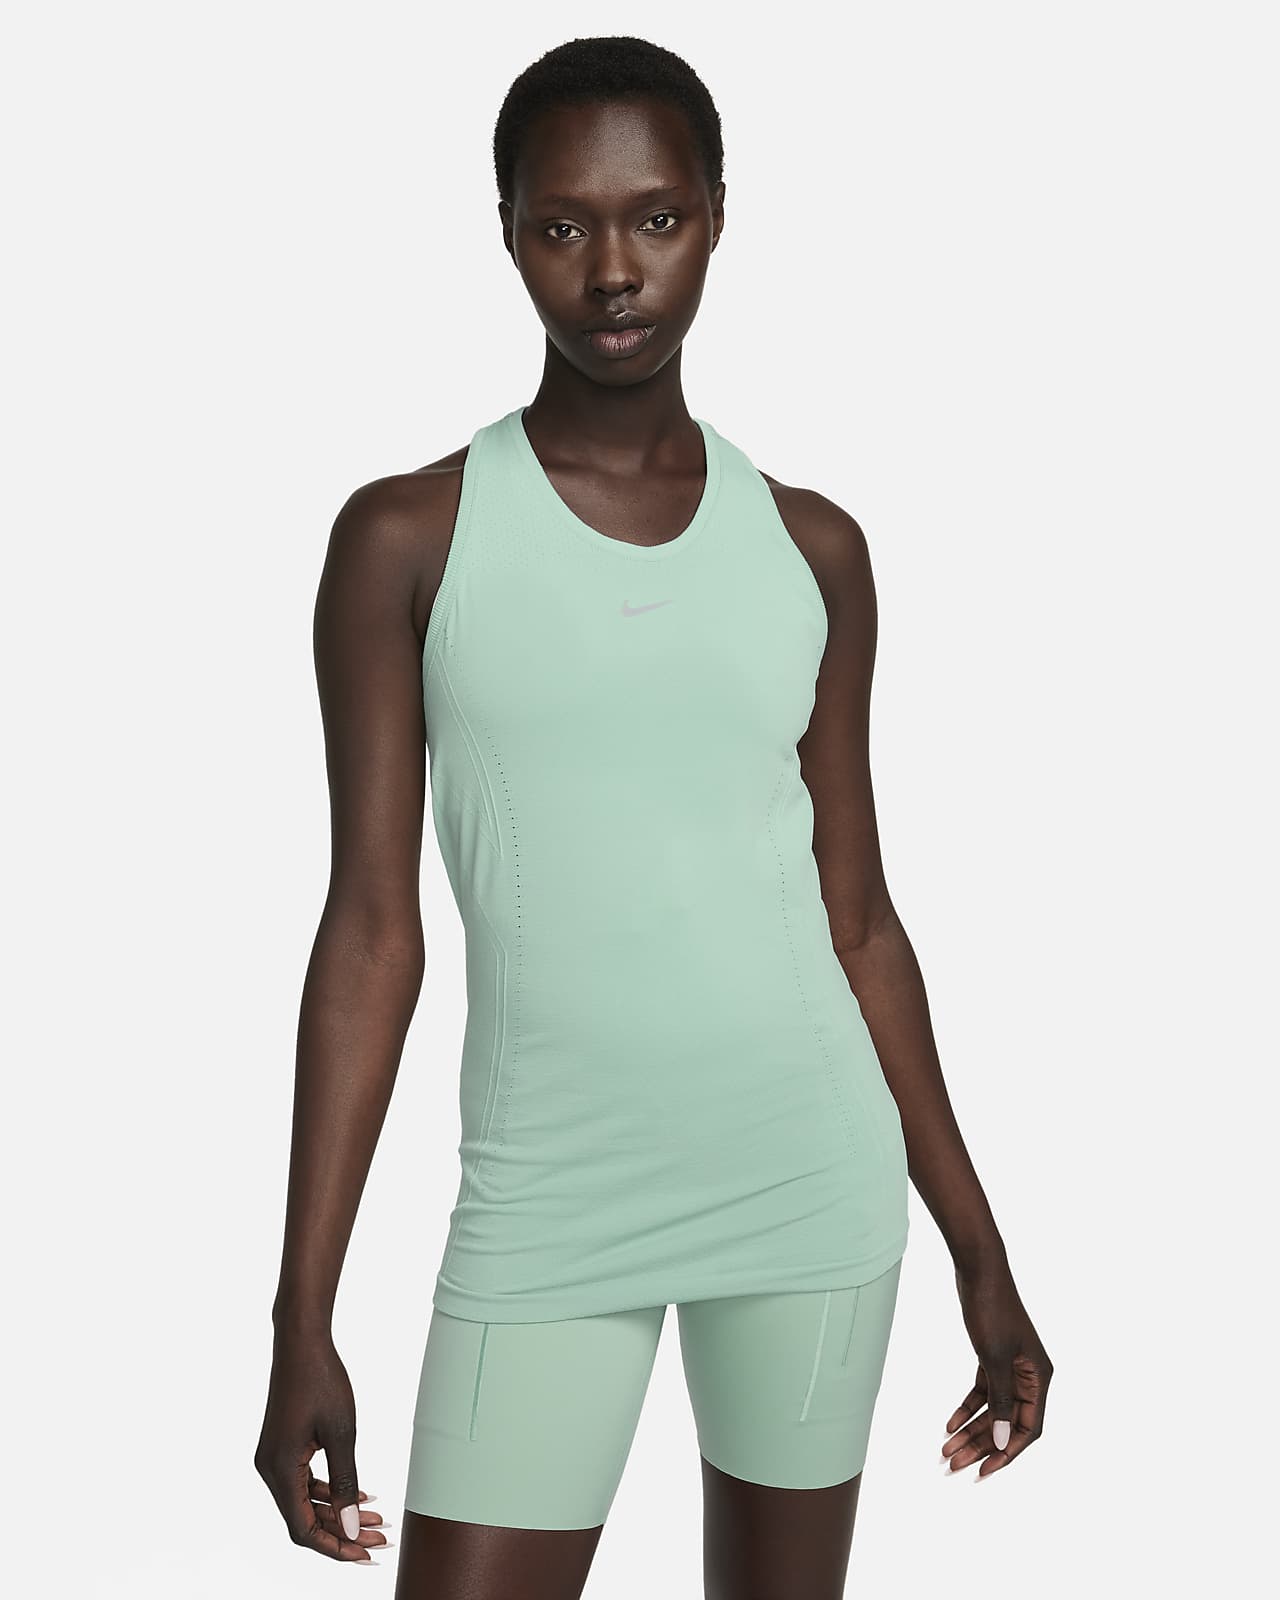 Nike Dri-FIT ADV Aura Women's Slim-Fit Tank